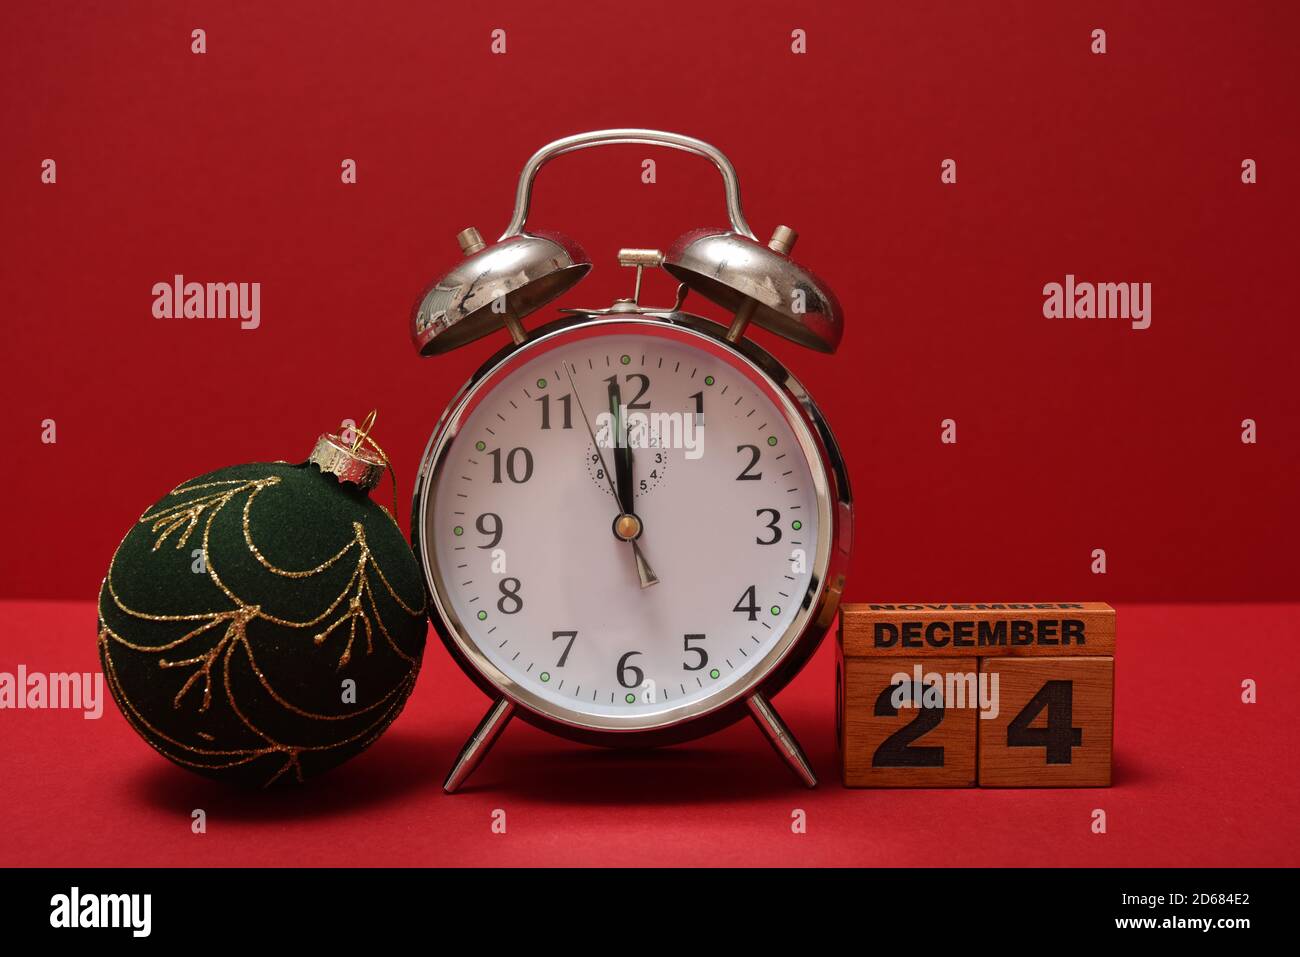 Reloj despertador de Nochebuena y bloques de calendario Foto de stock